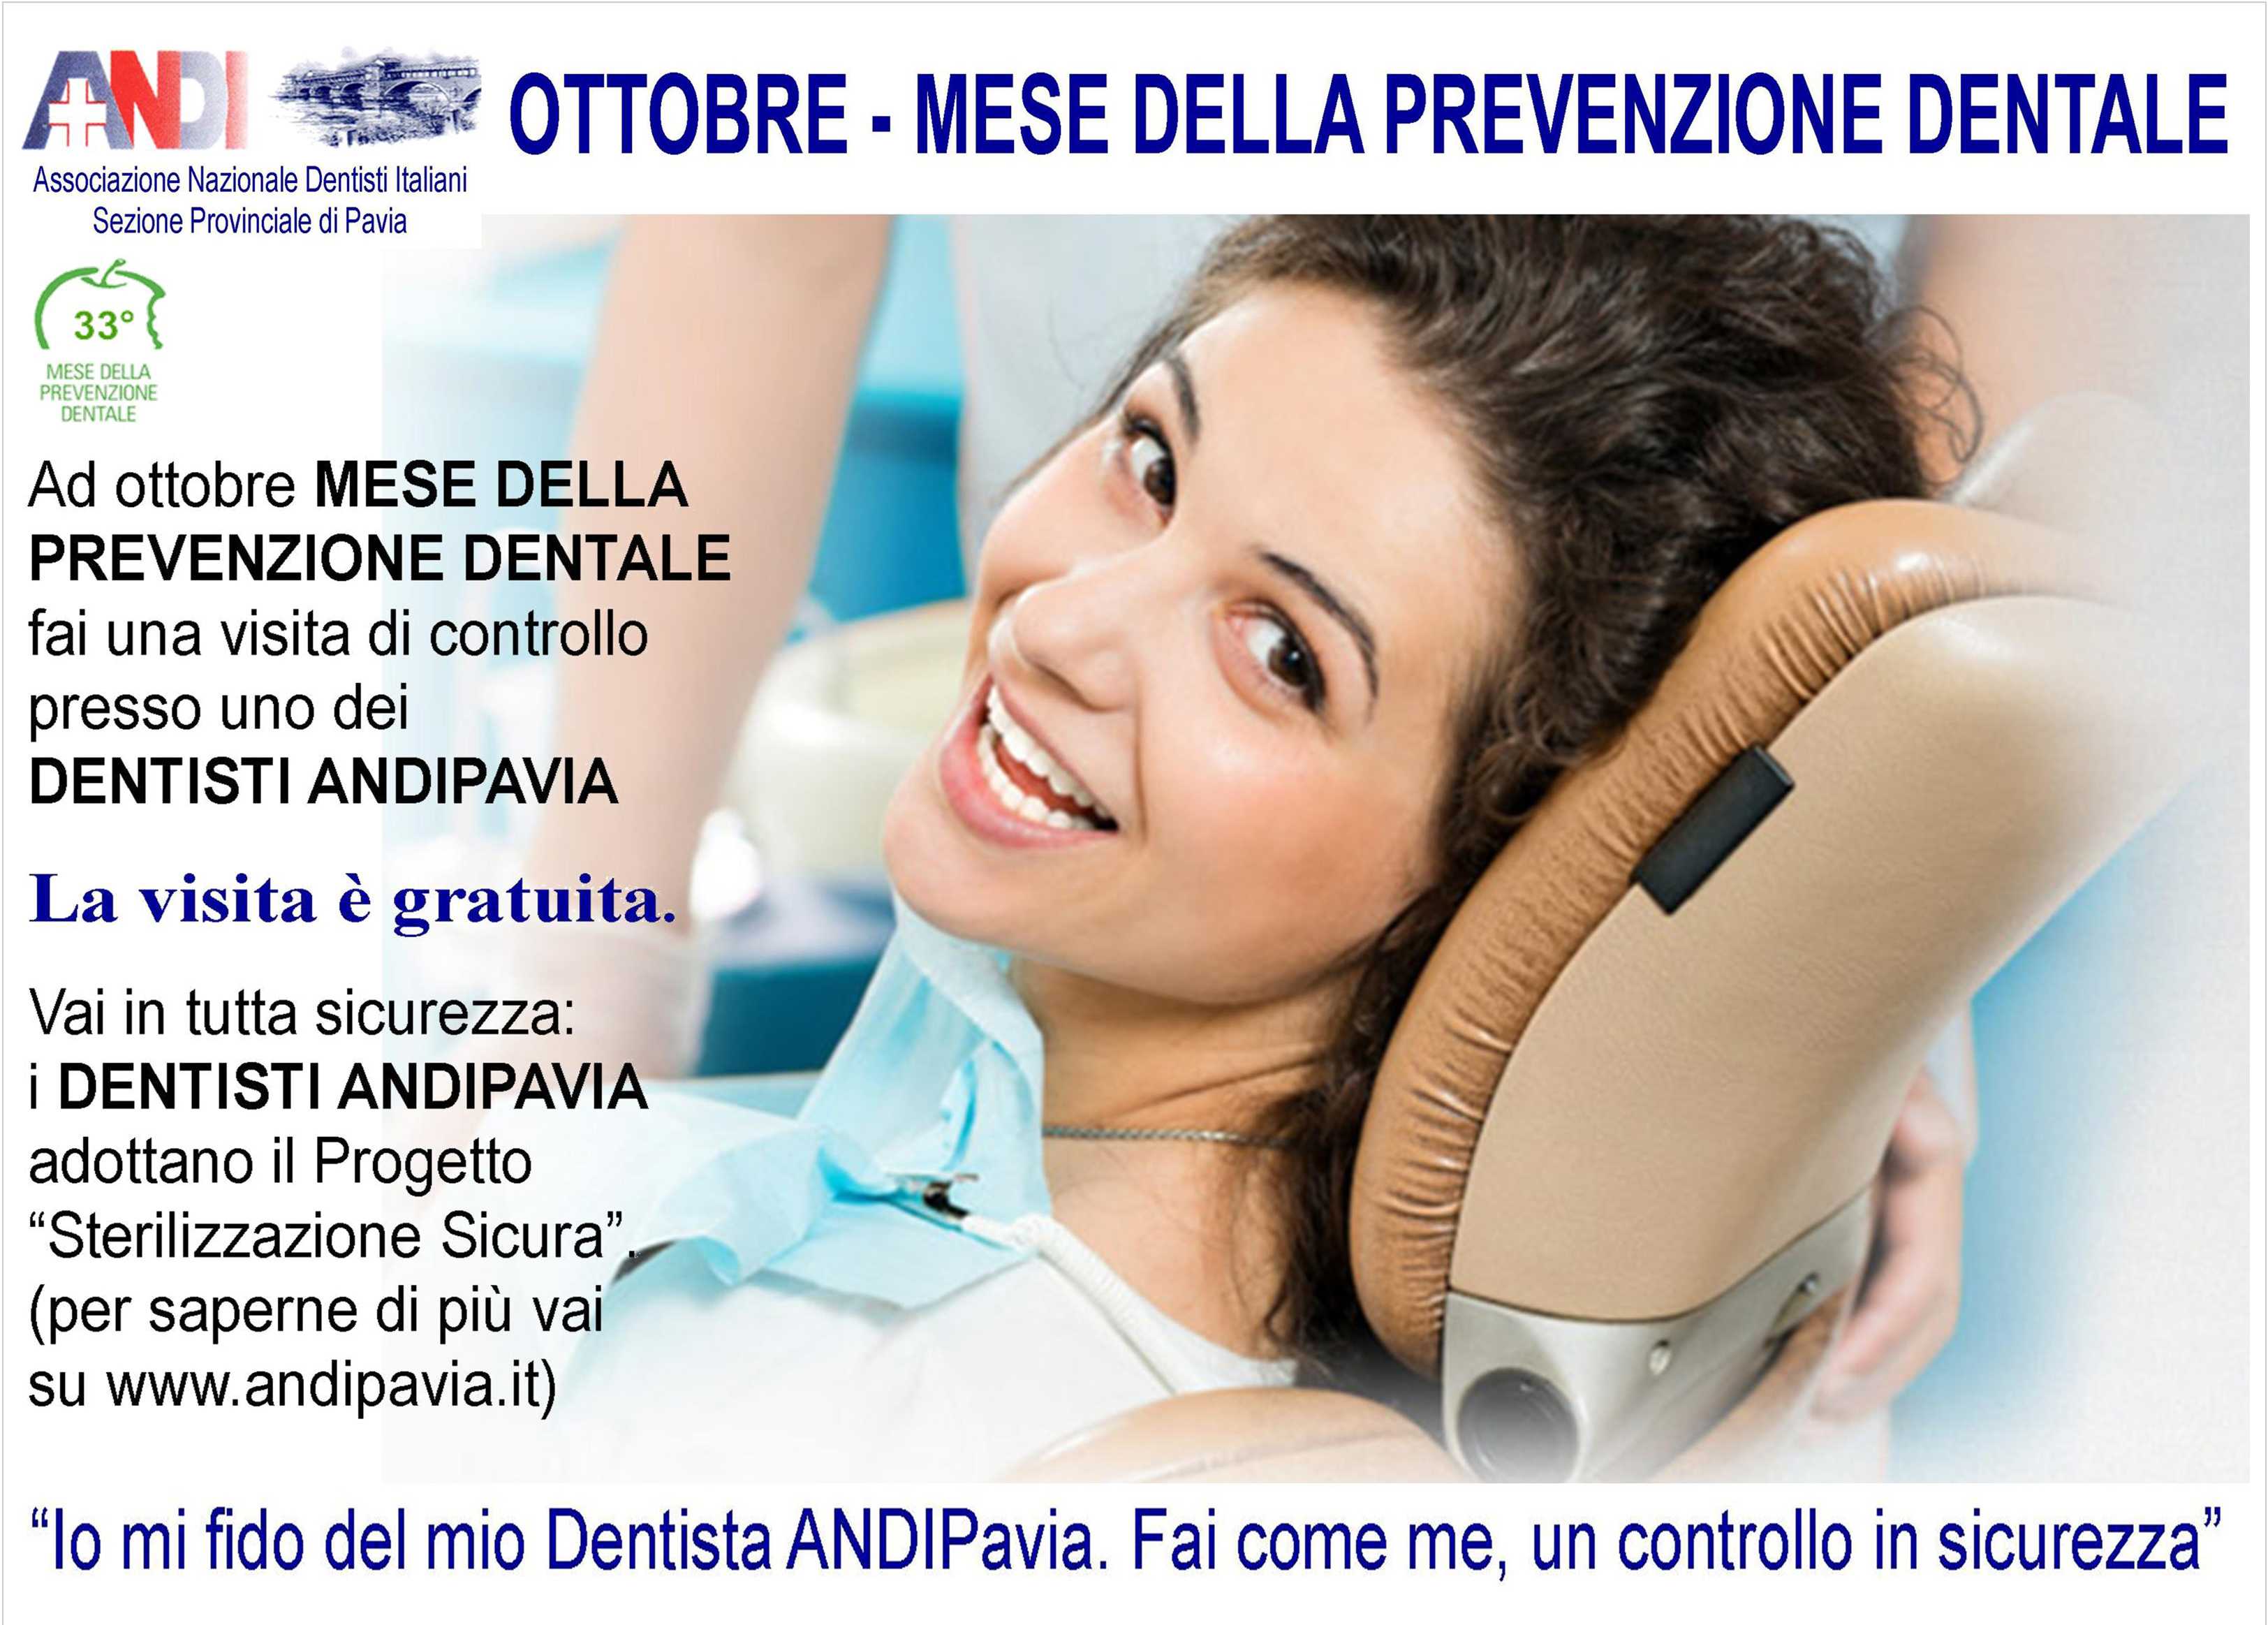 ANDI Pavia, mese della prevenzione dentale: visite gratuite presso 150 dentisti